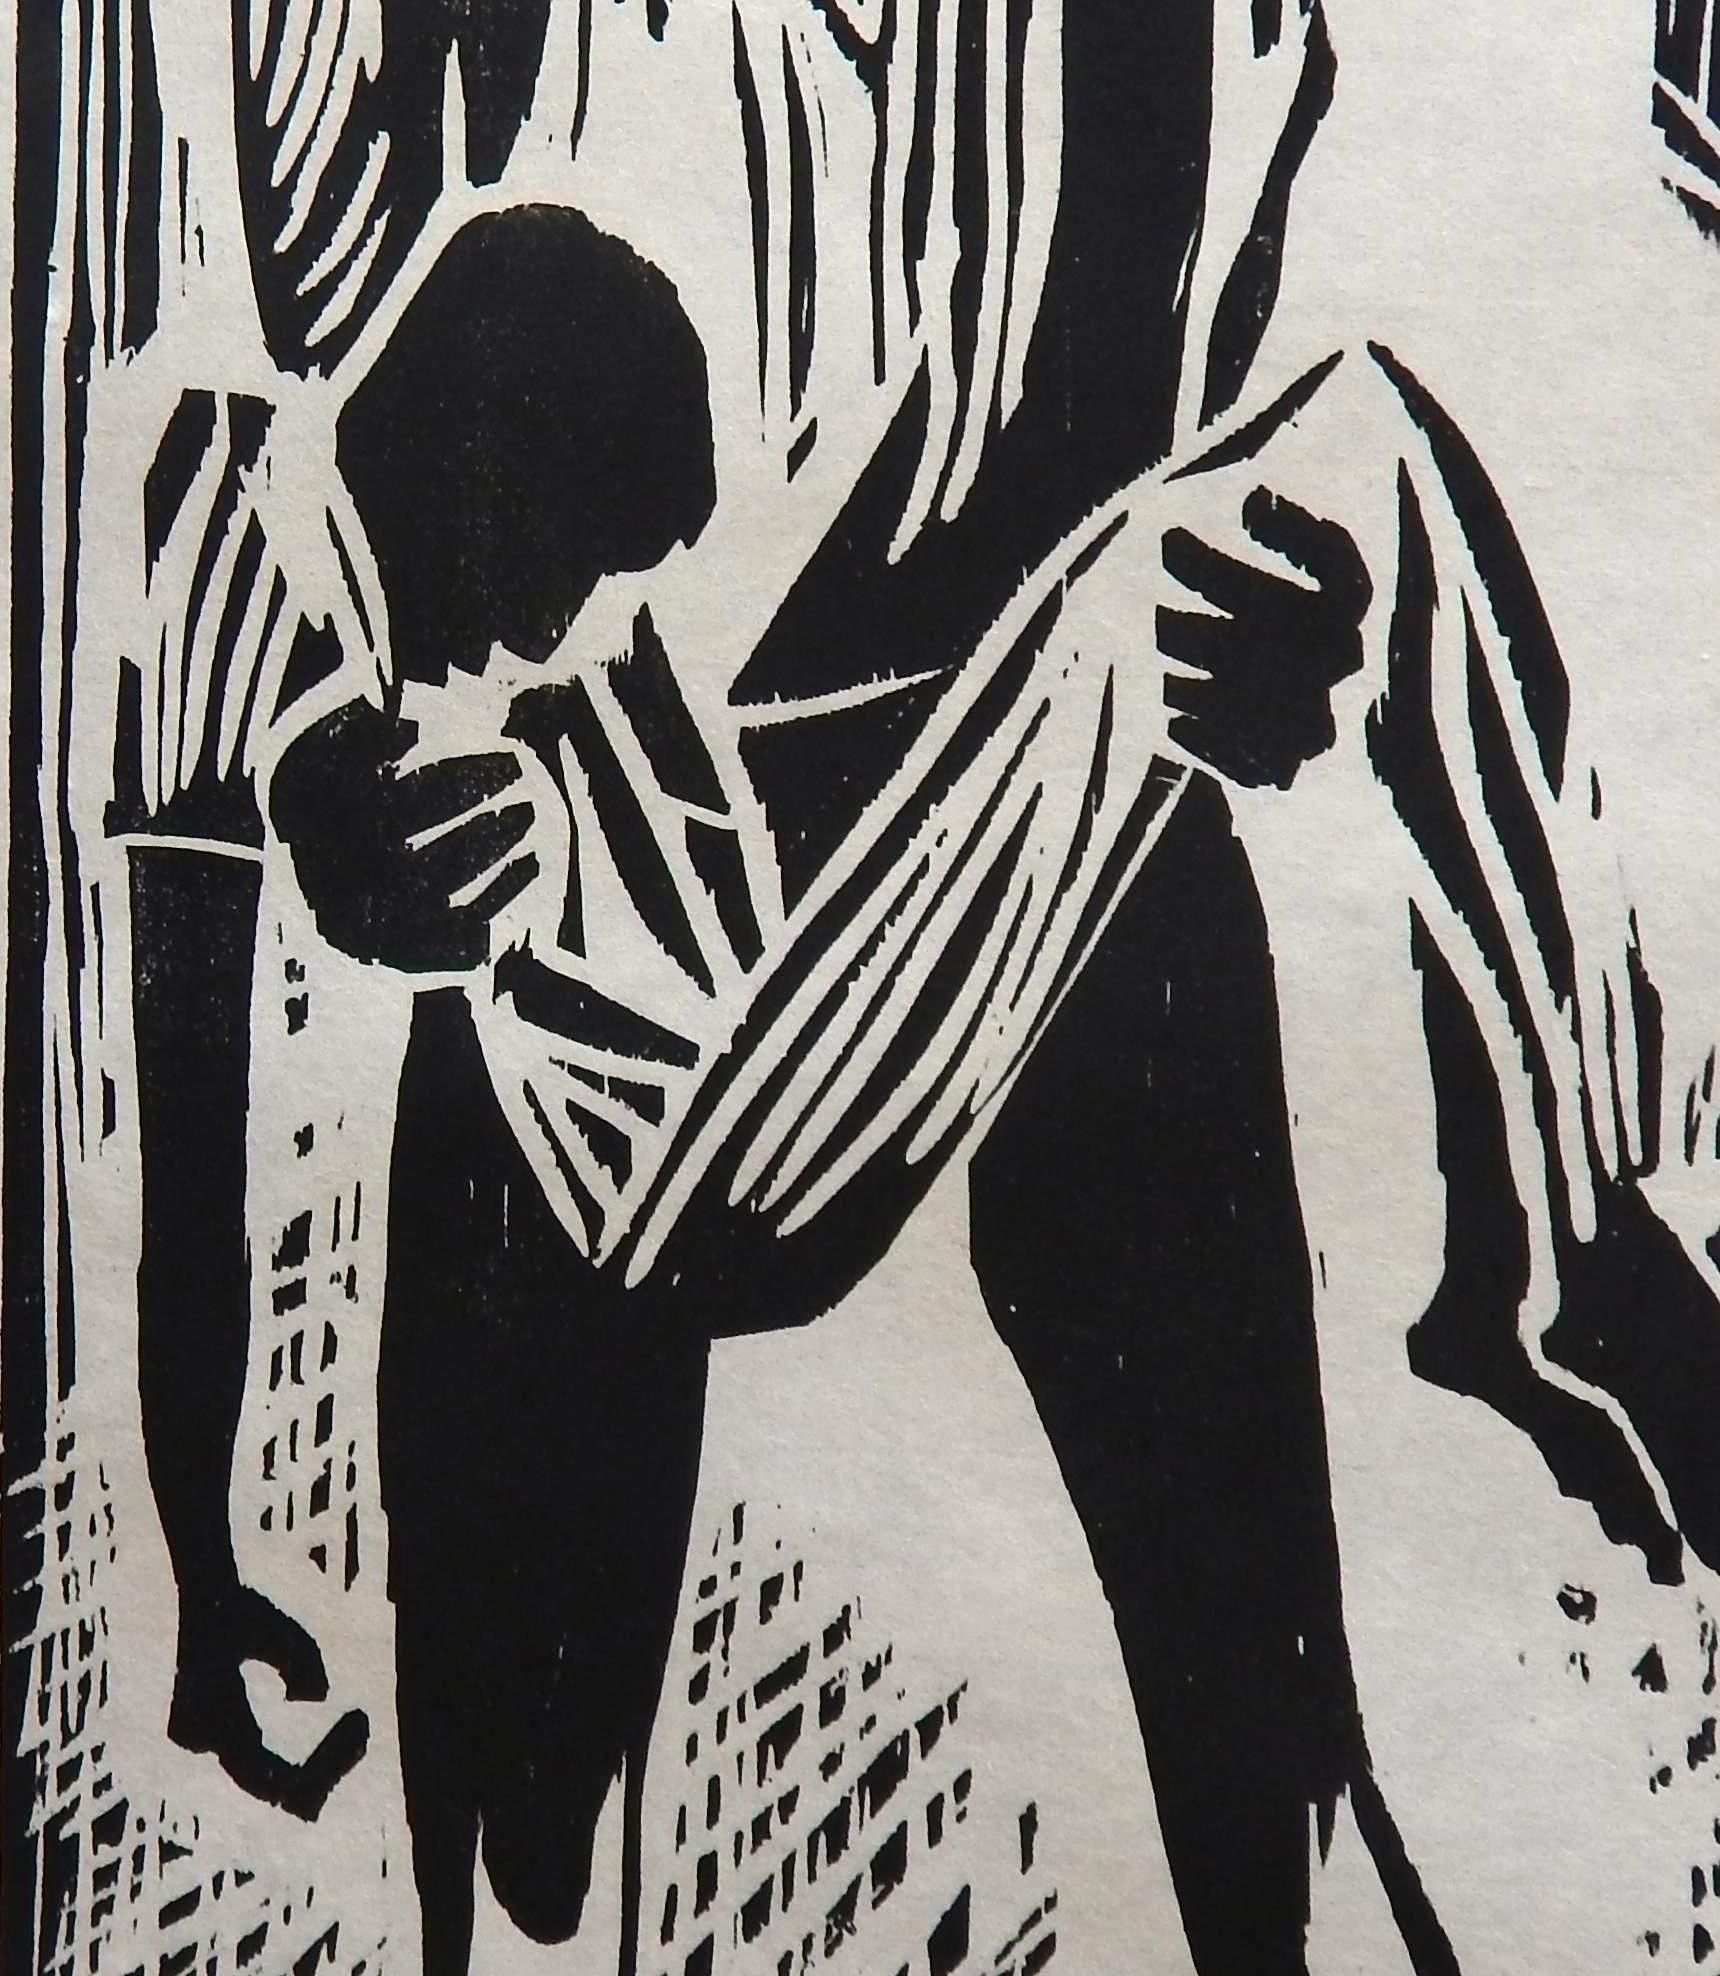 Papier gravure sur bois originale d'Herman Volz, troubles sociaux des années 1960, troubles sociaux en vente